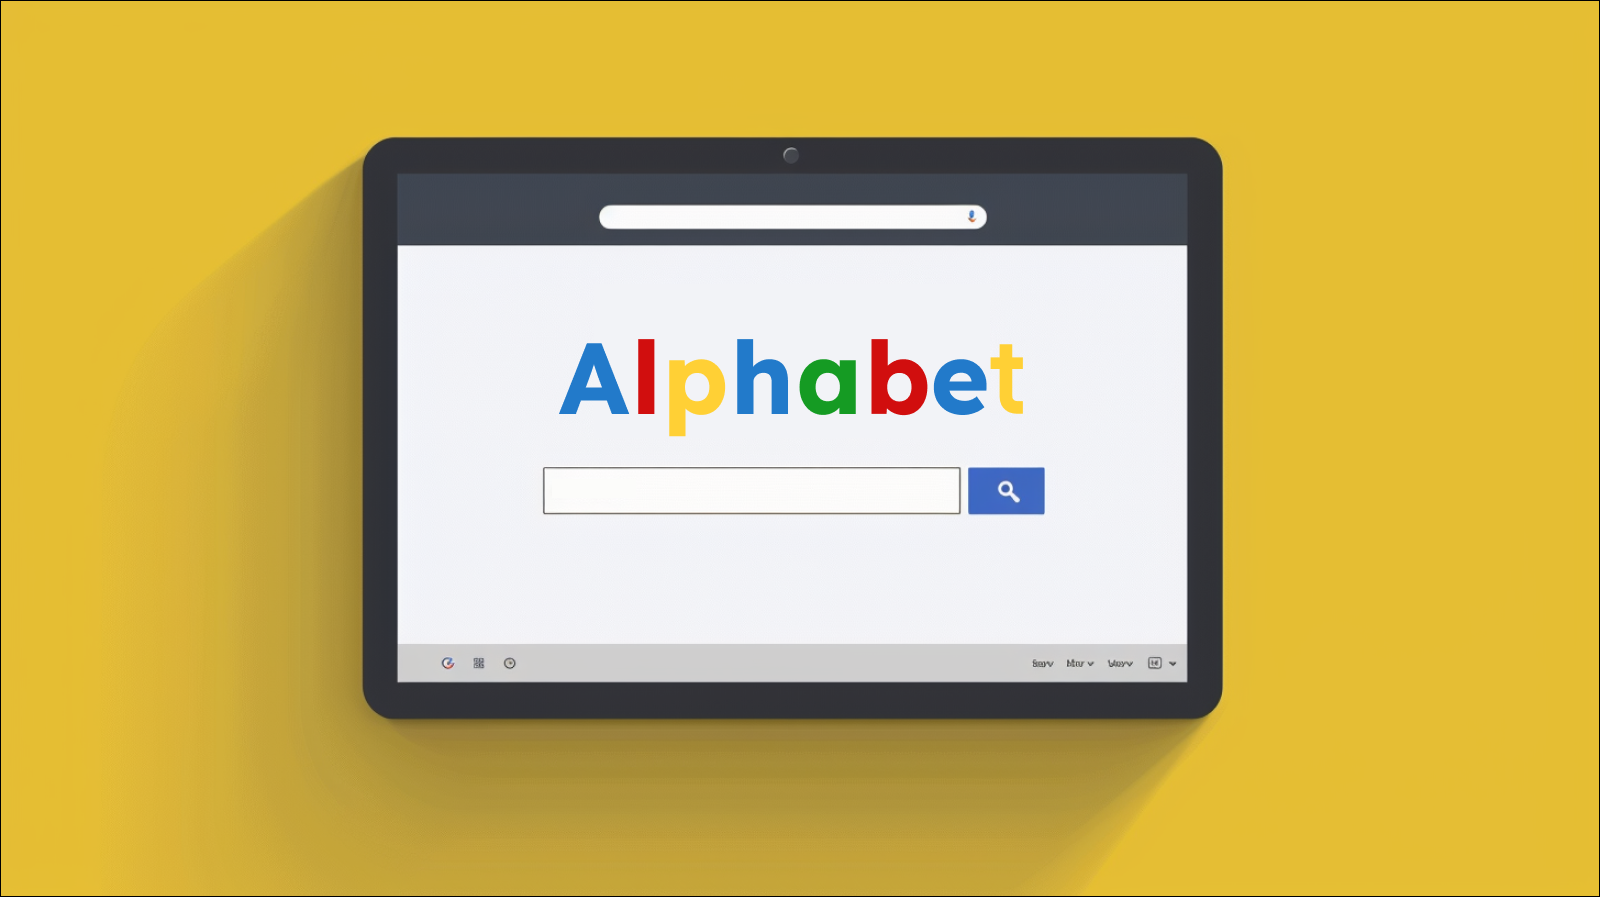 ein Webbrowser-Fenster, das das Wort Alphabet im Google-Farbschema anzeigt, mit einer Suchleiste